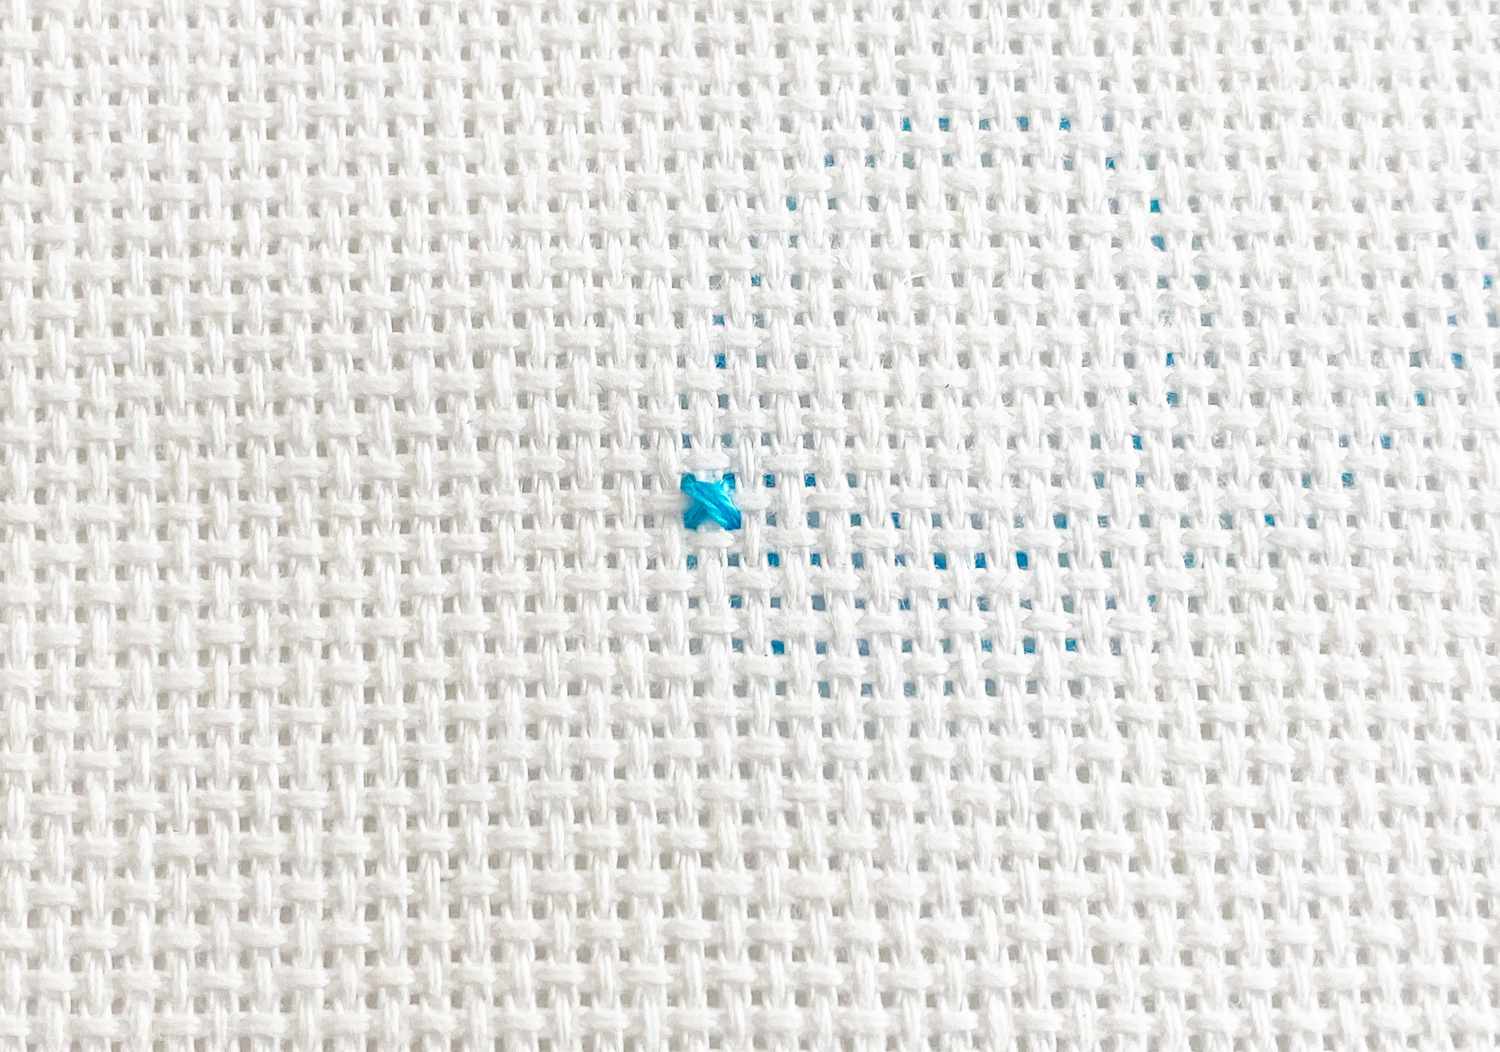 A close-up of a blue cross stitch